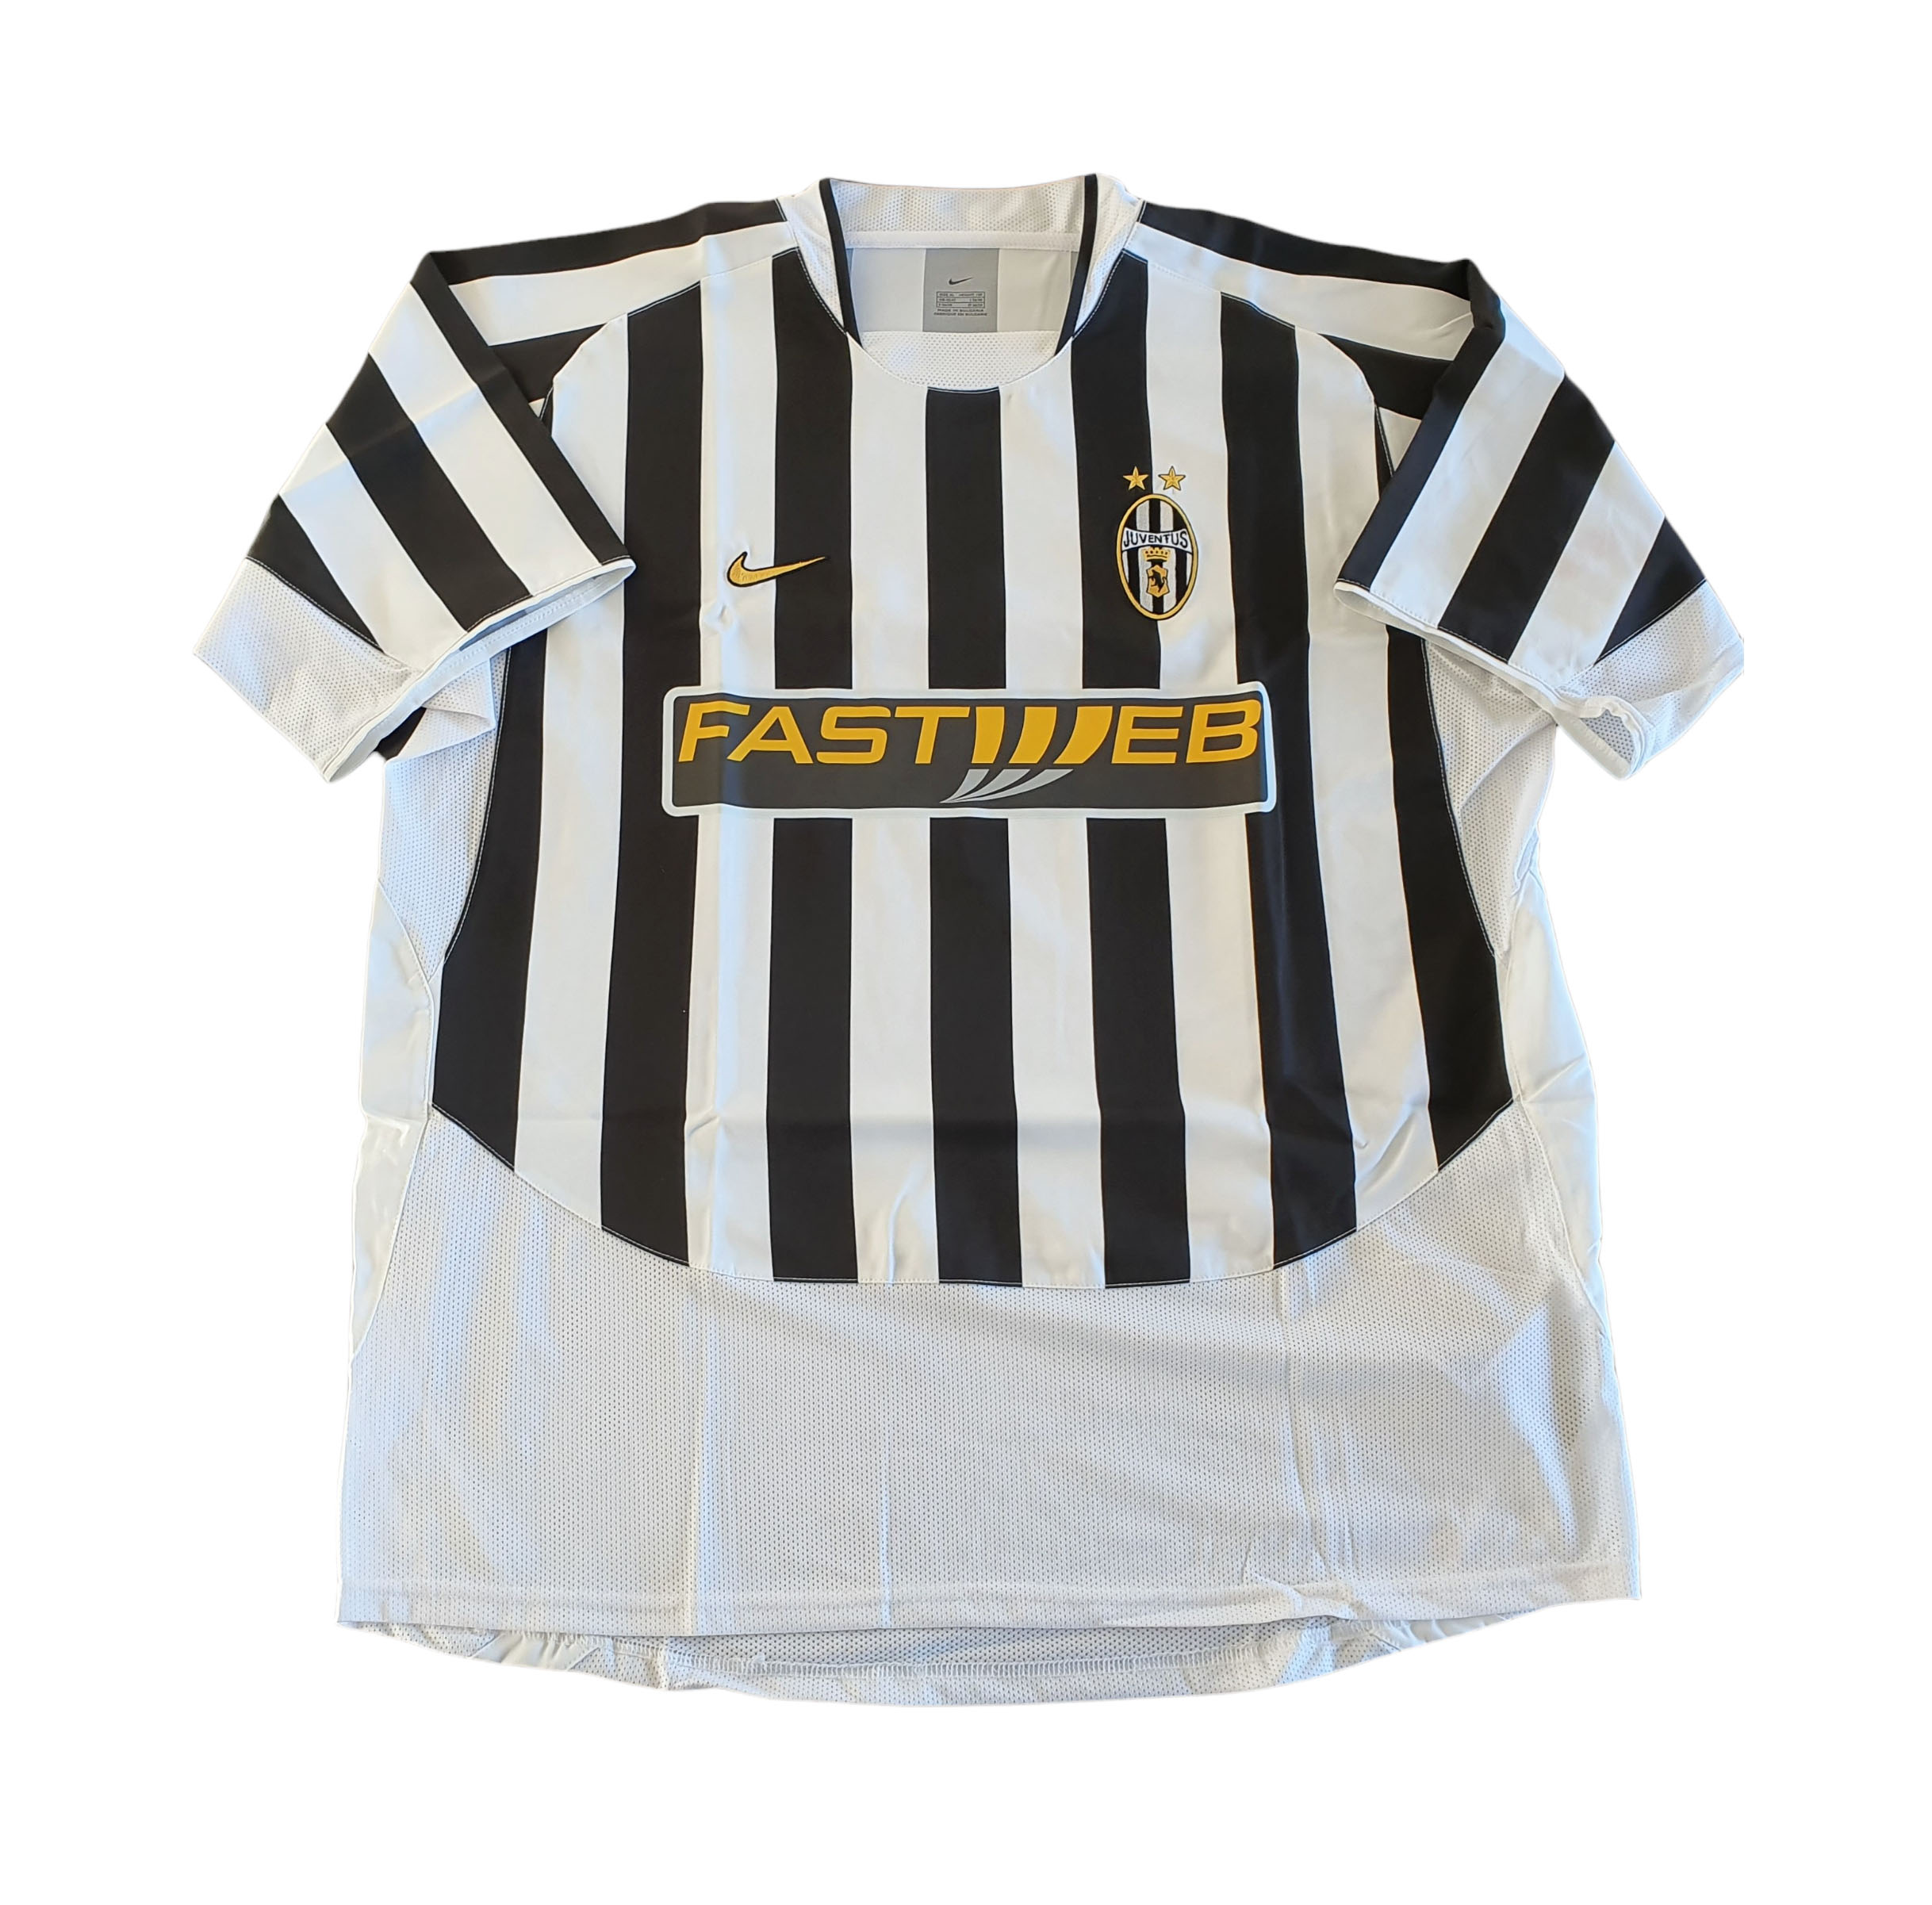 Juventus 2003-04 maglia Nike home